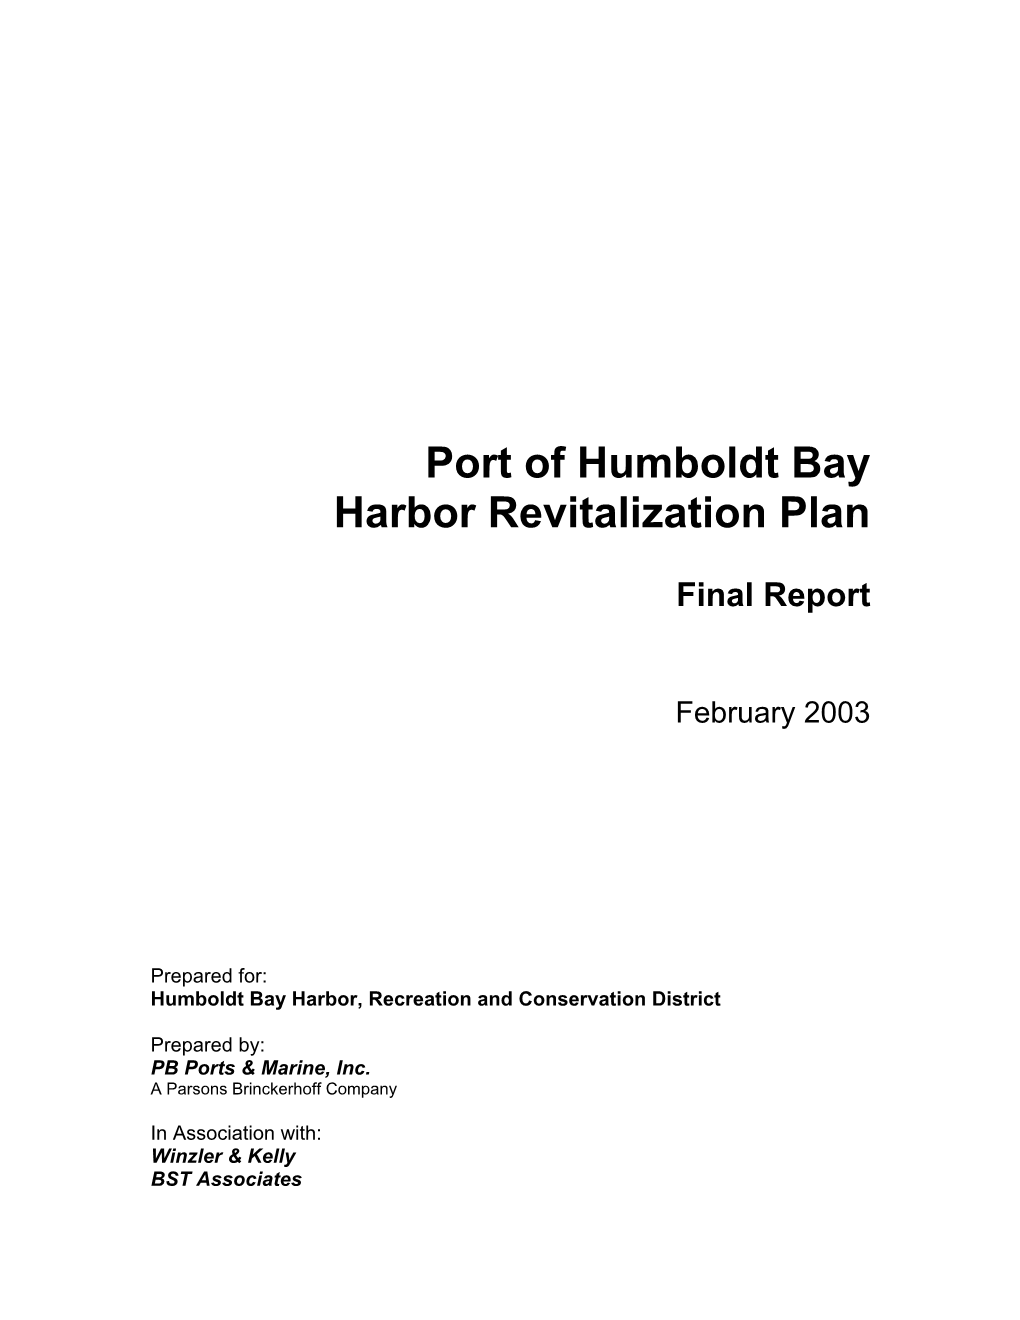 Port of Humboldt Bay Harbor Revitalization Plan, 2003